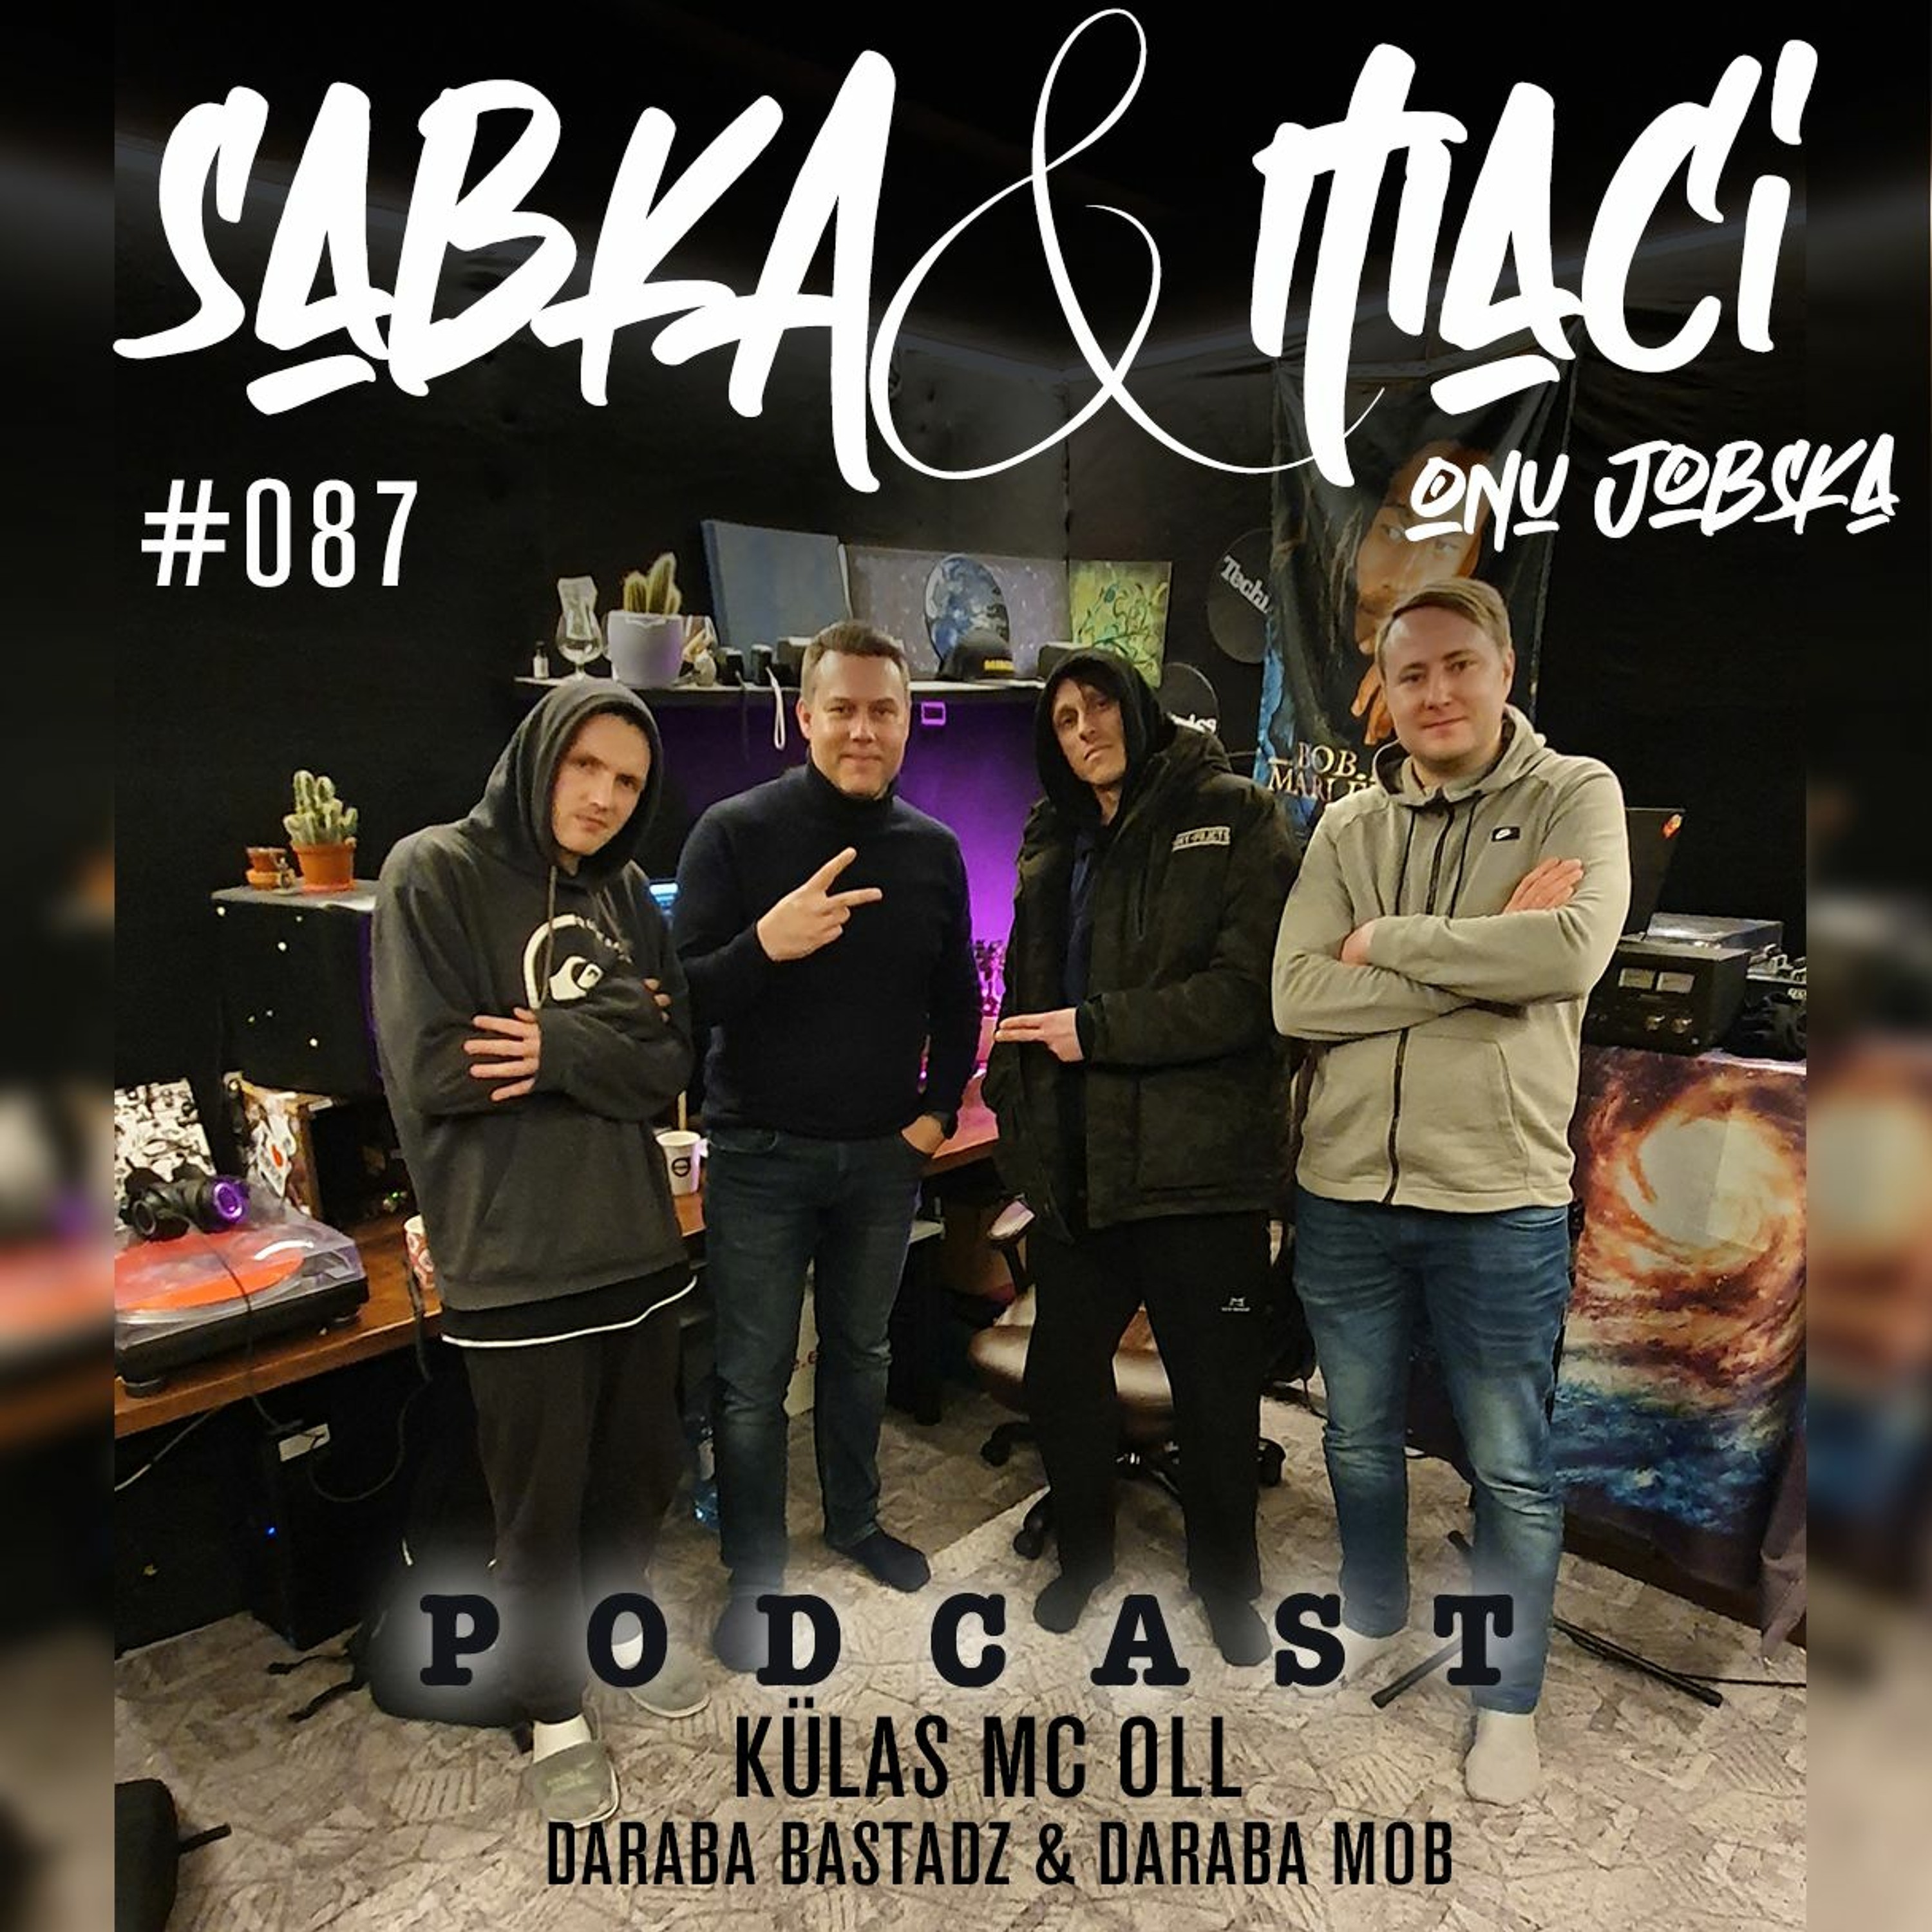 KÜLAS MC OLL(Daraba Bastadz, Daraba Mob)#087(31.01.2021) – Sabka & Maci &  Onu Jobska – Podcast – Podtail